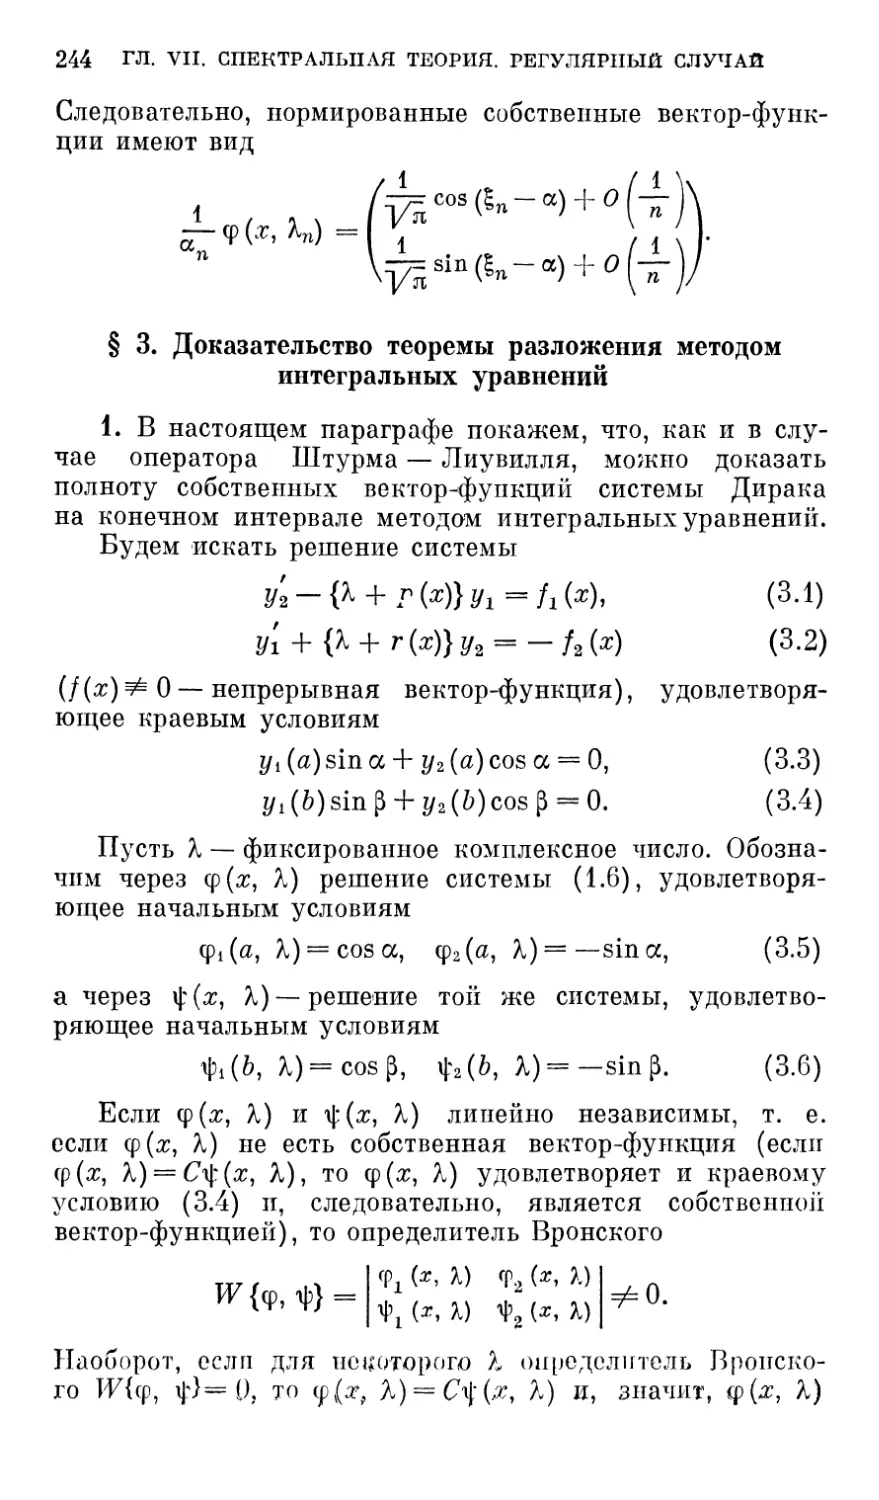 § 3. Доказательство теоремы разложения методом интегральных уравнений